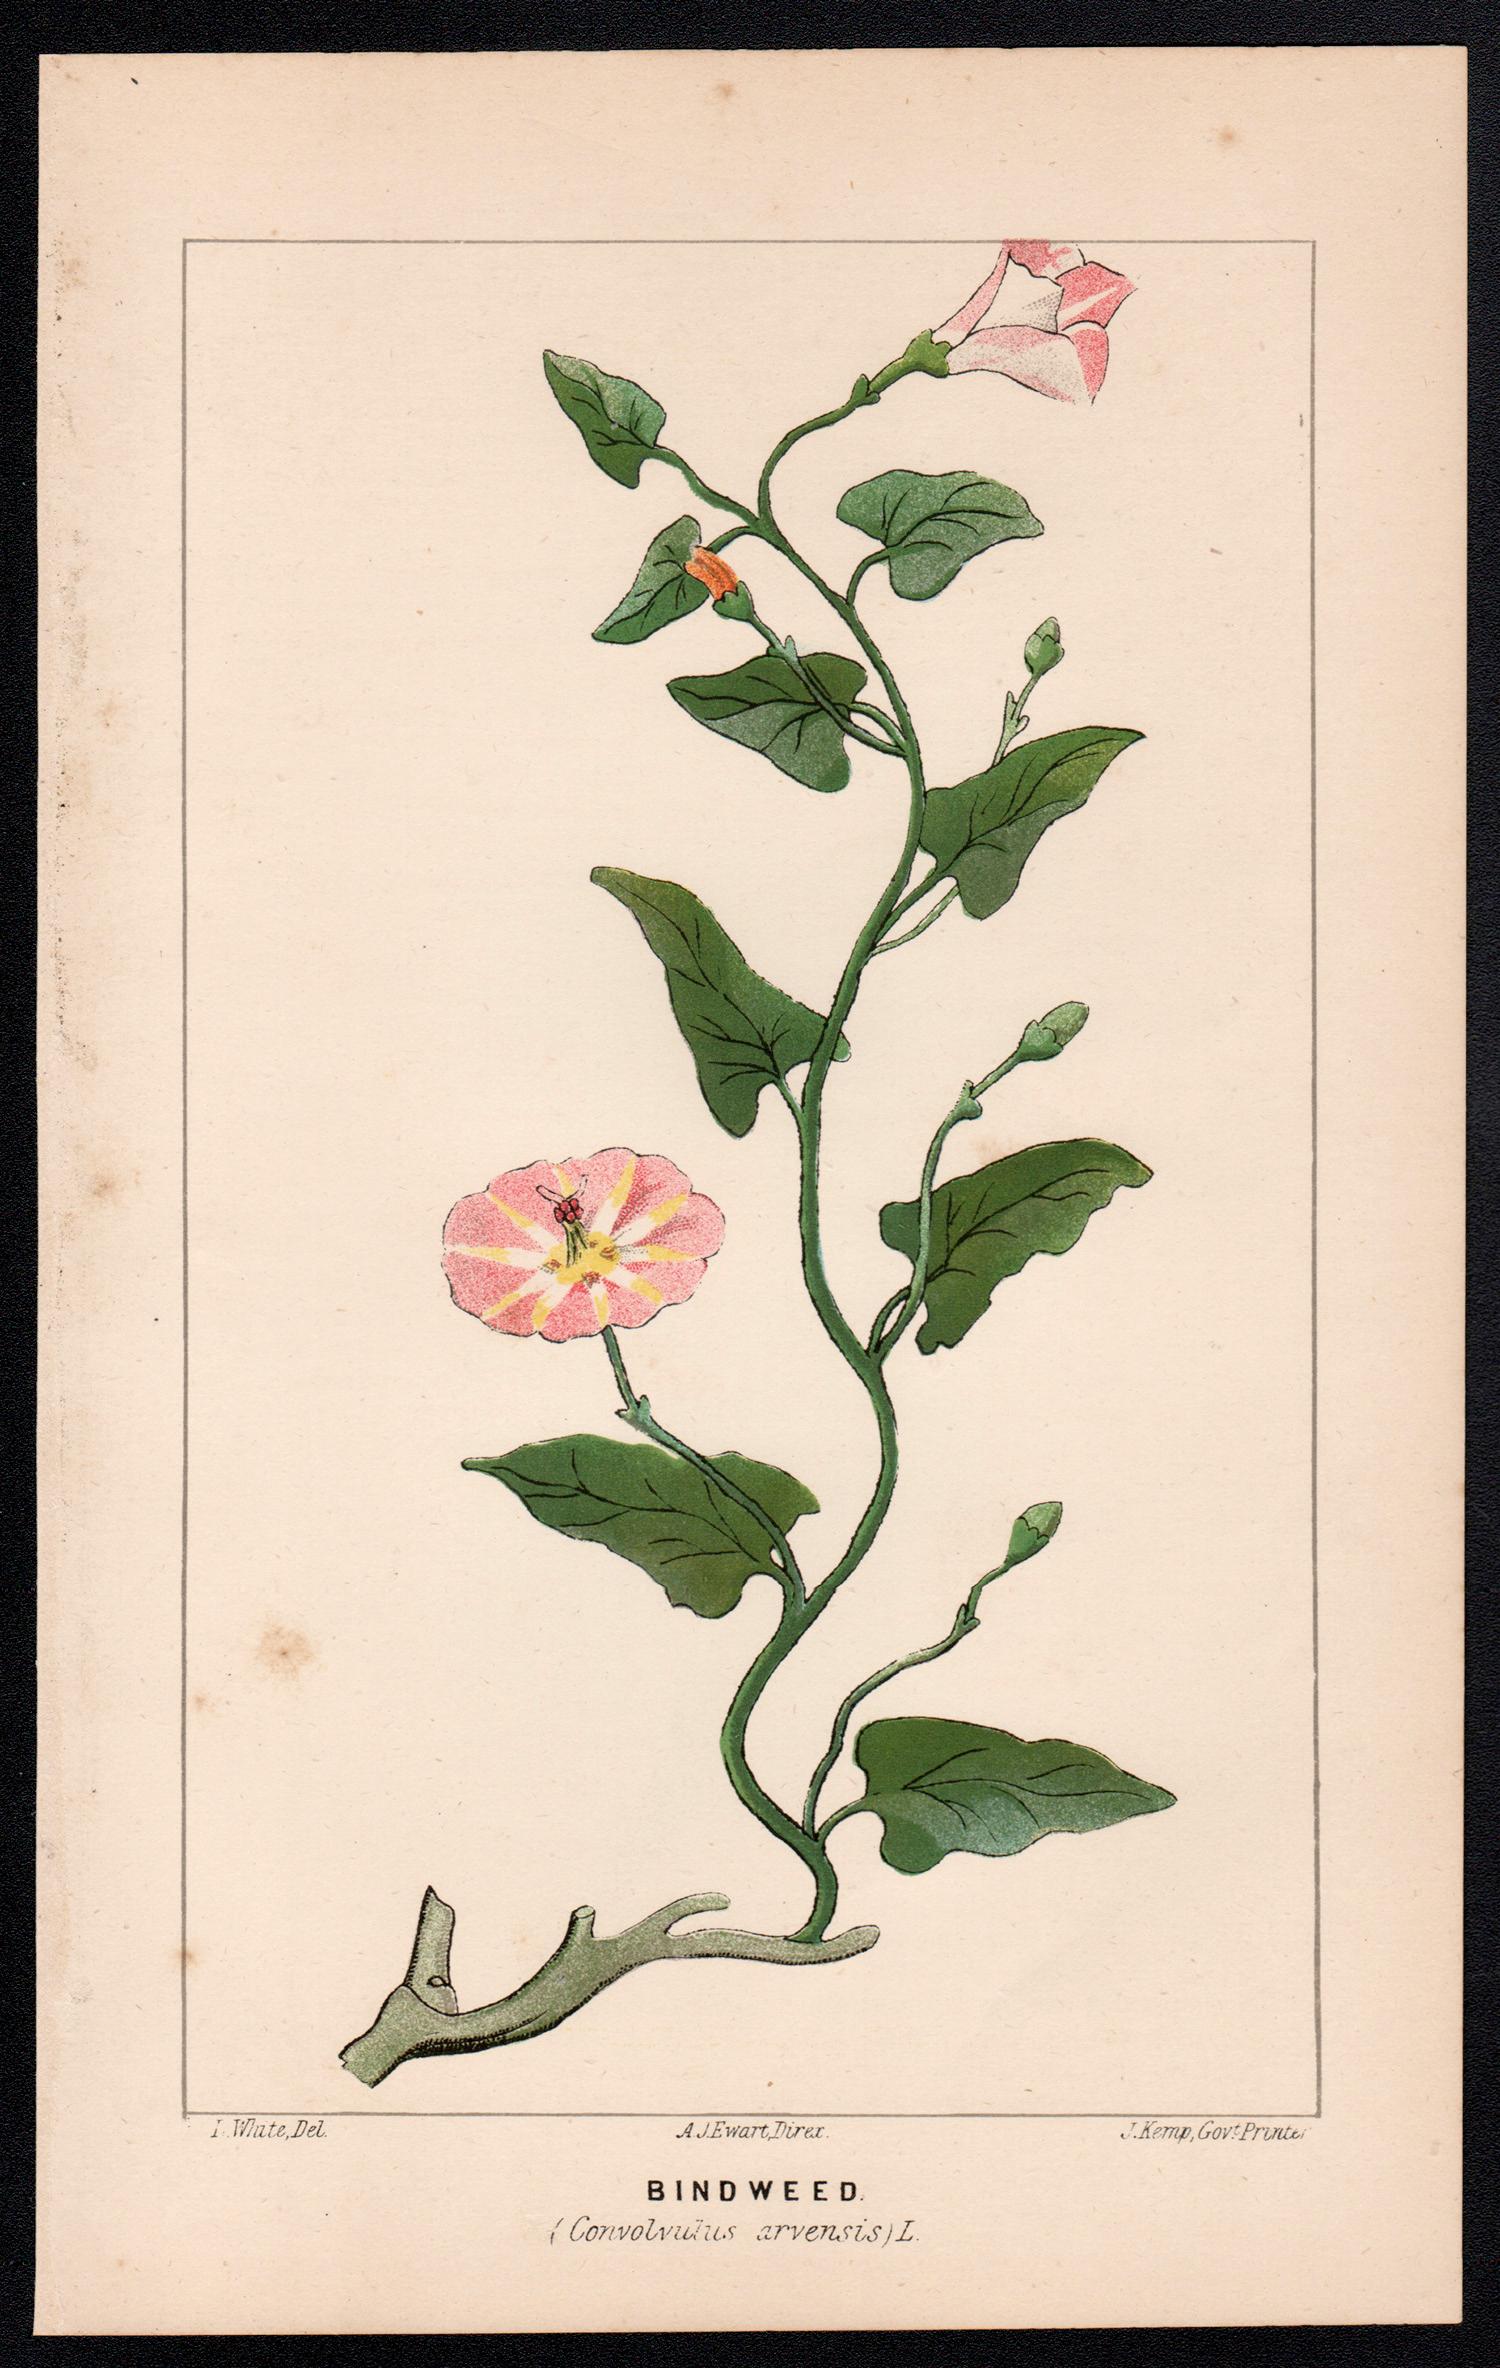 Lithographie botanique ancienne de Bindweed (Convolvulus arvensis) - Print de O Wauer